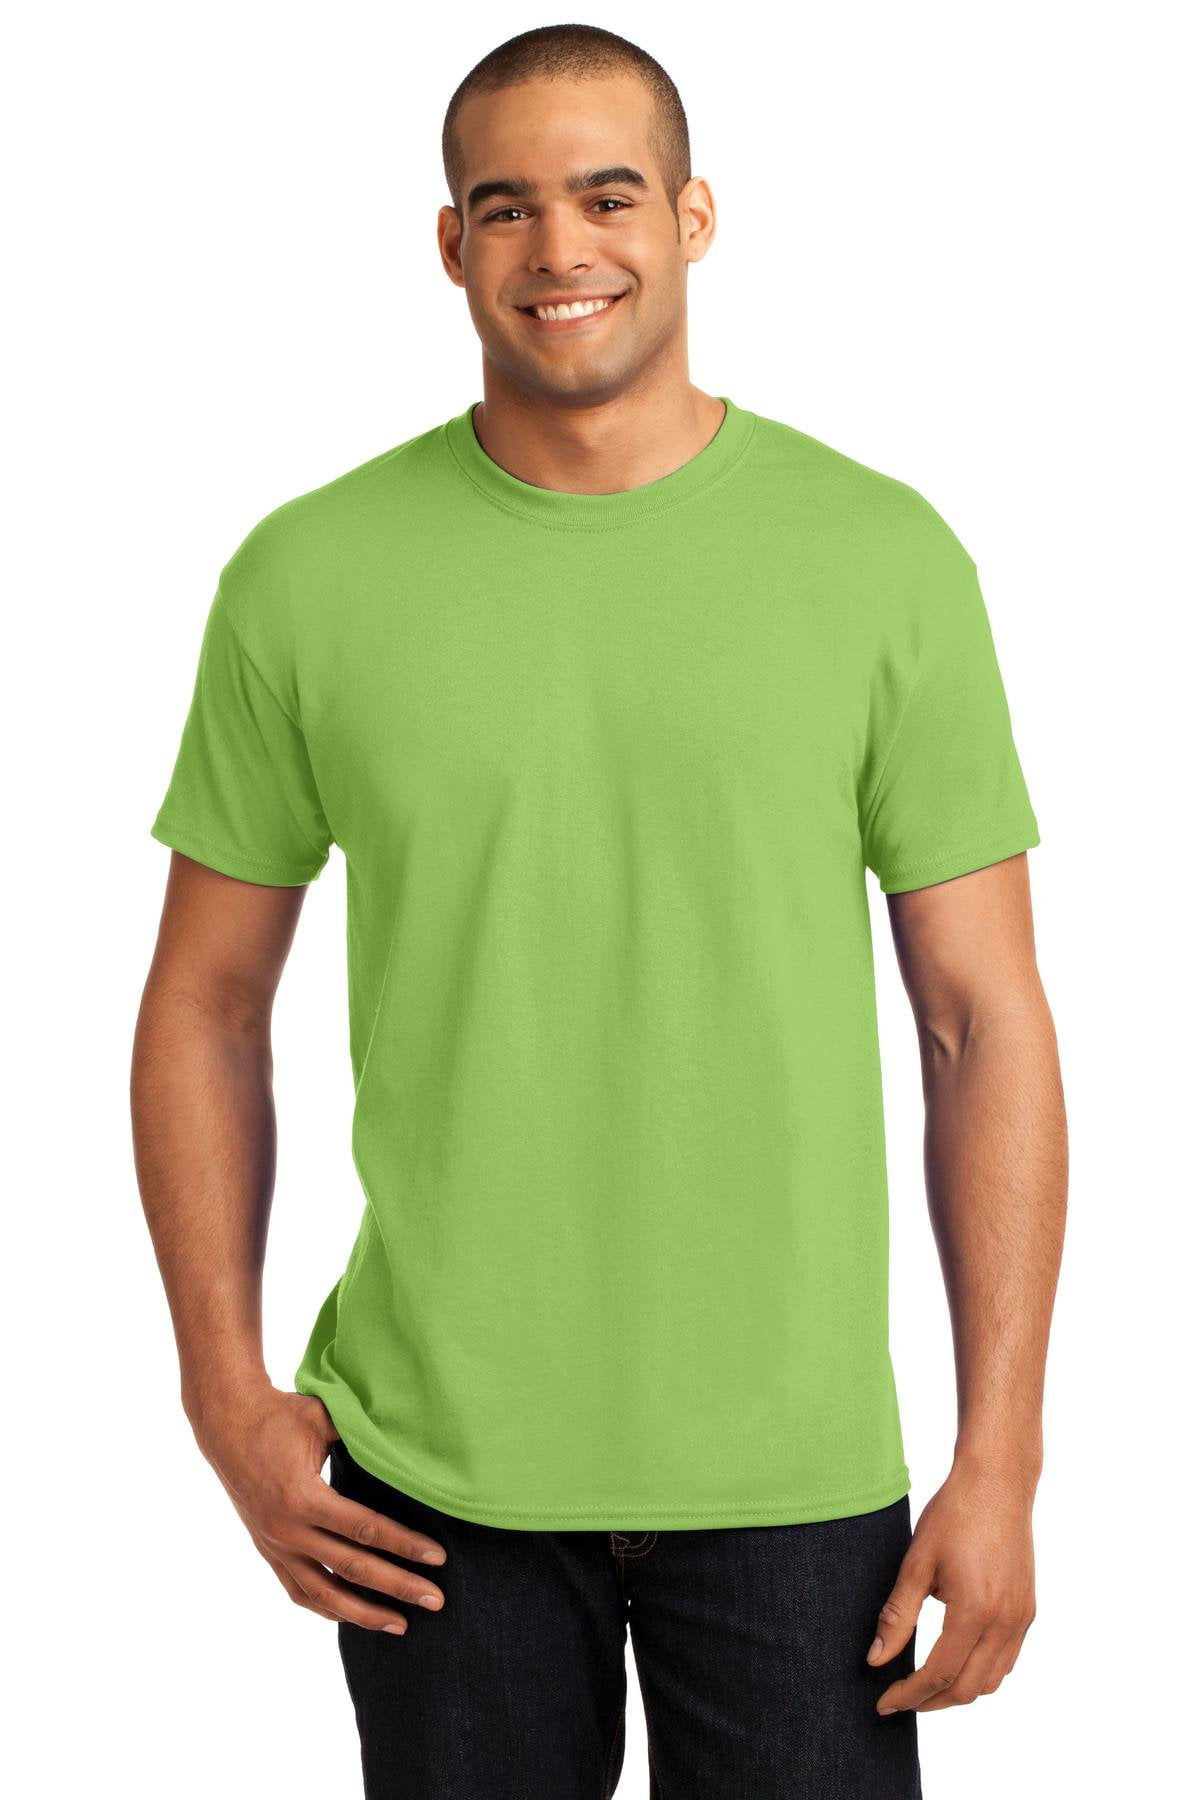 Hanes Men's 3 Pack Comfortblend Short Sleeve T-Shirt - Walmart.com